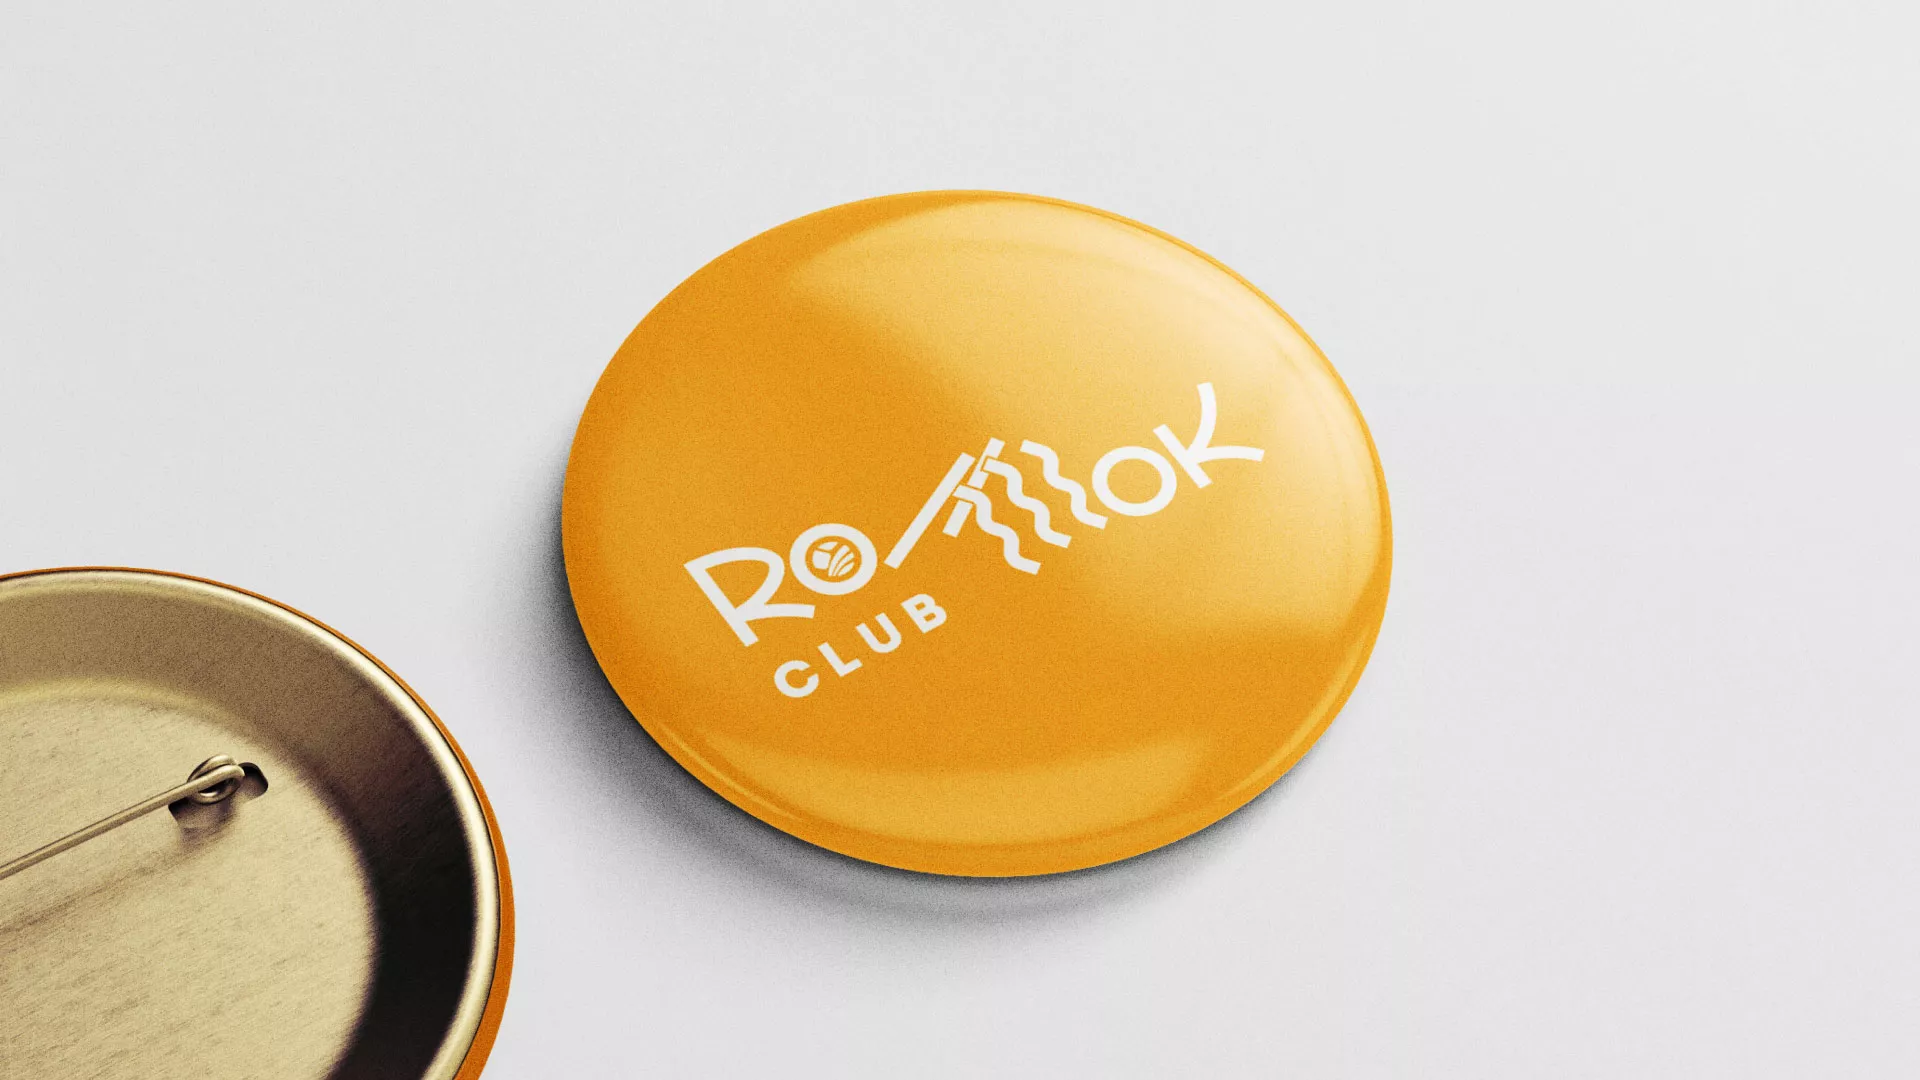 Создание логотипа суши-бара «Roll Wok Club» в Иваново